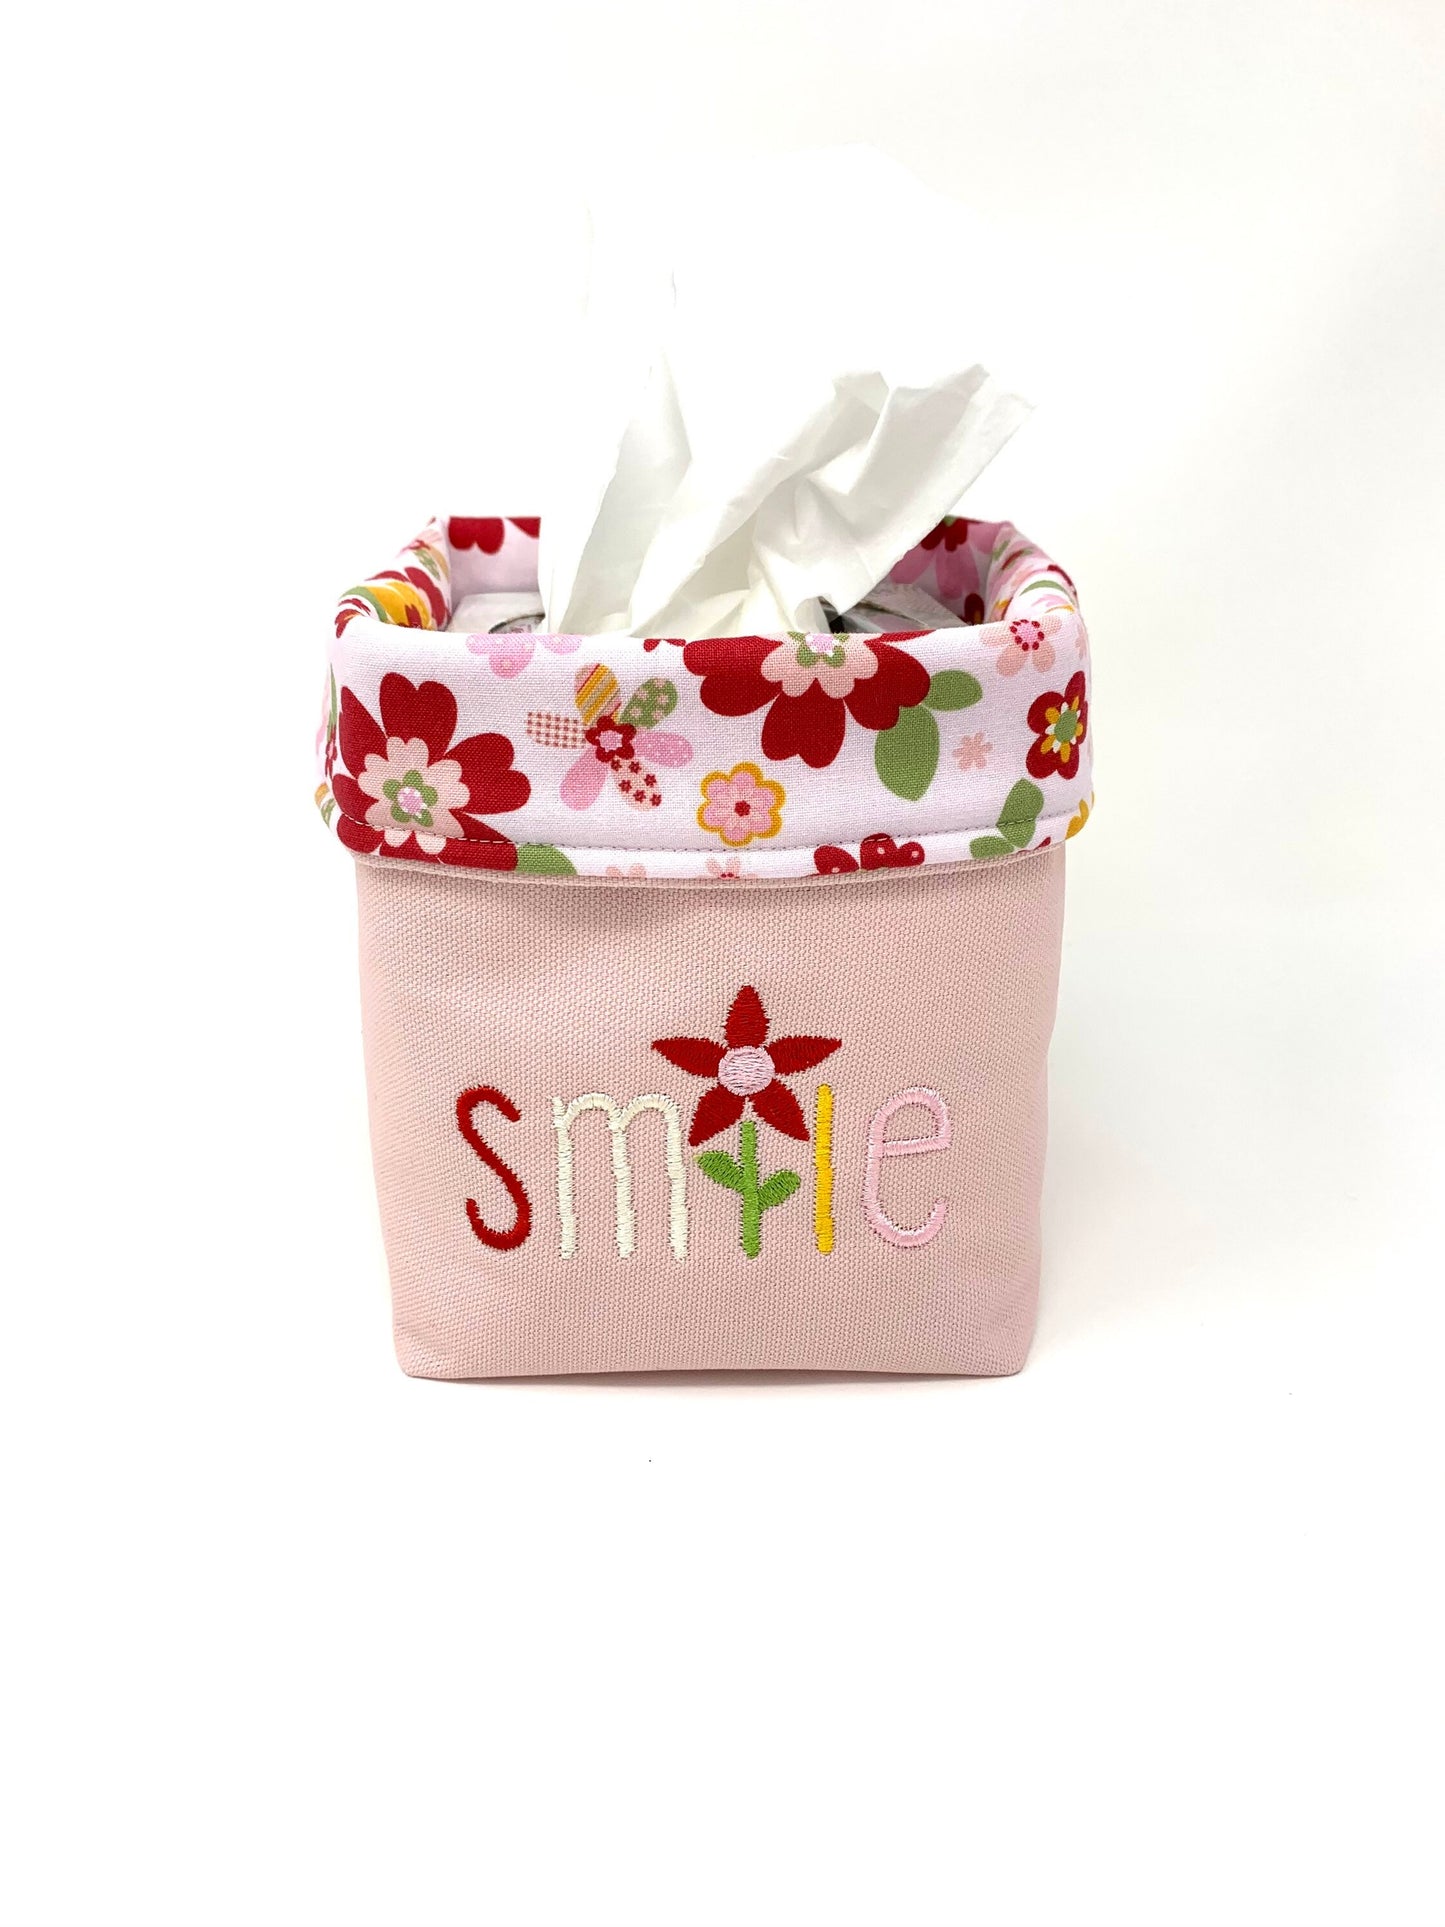 Fabric Bag, Basket, Reusable, Tissue Box Holder, Floral, Smile Basket, Red, Pink, Handmade